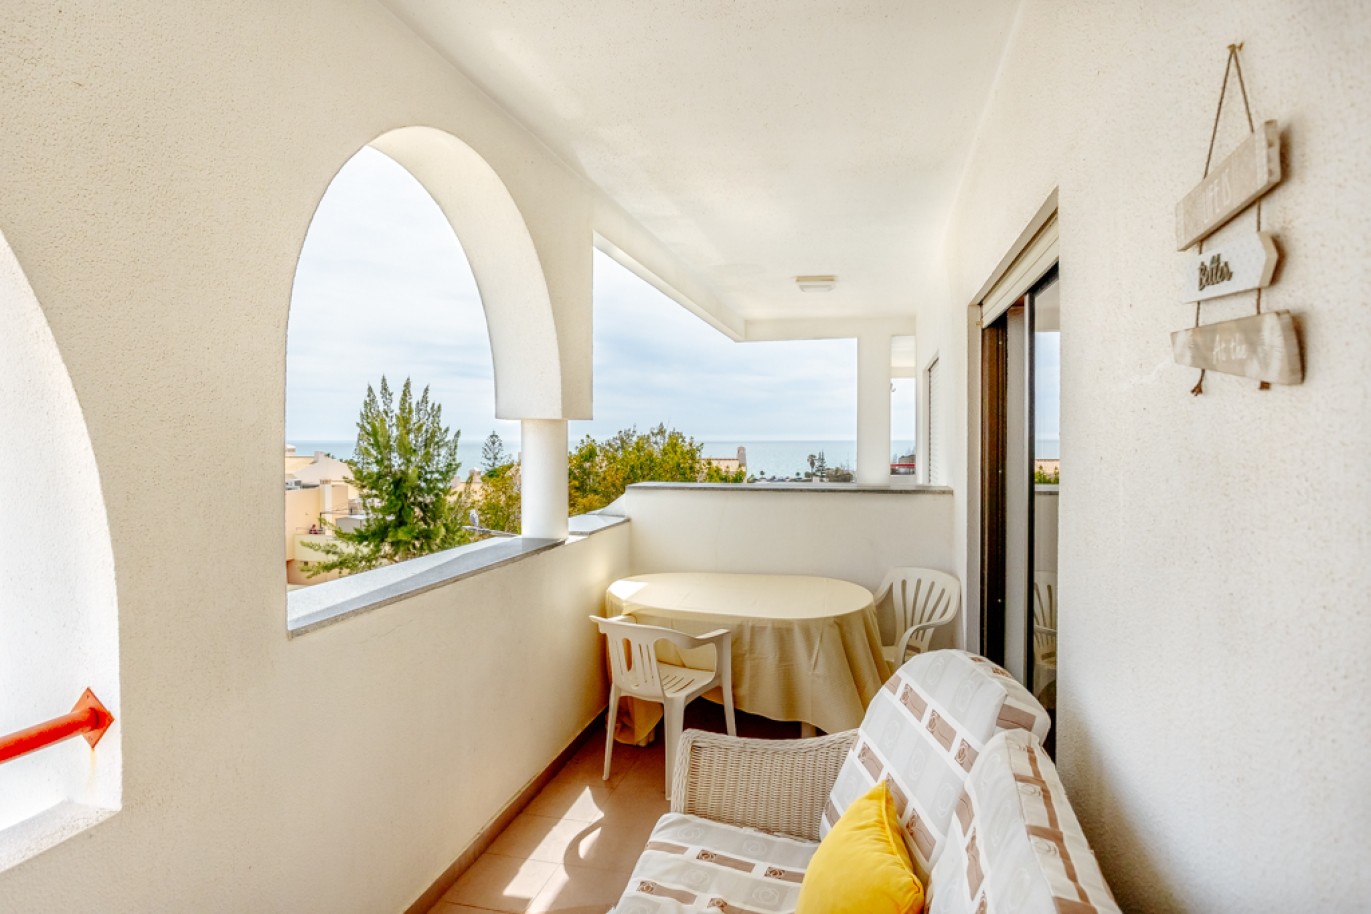 Apartamento com 1+1 quartos, com vista mar, para venda em Porches, Algarve_257024